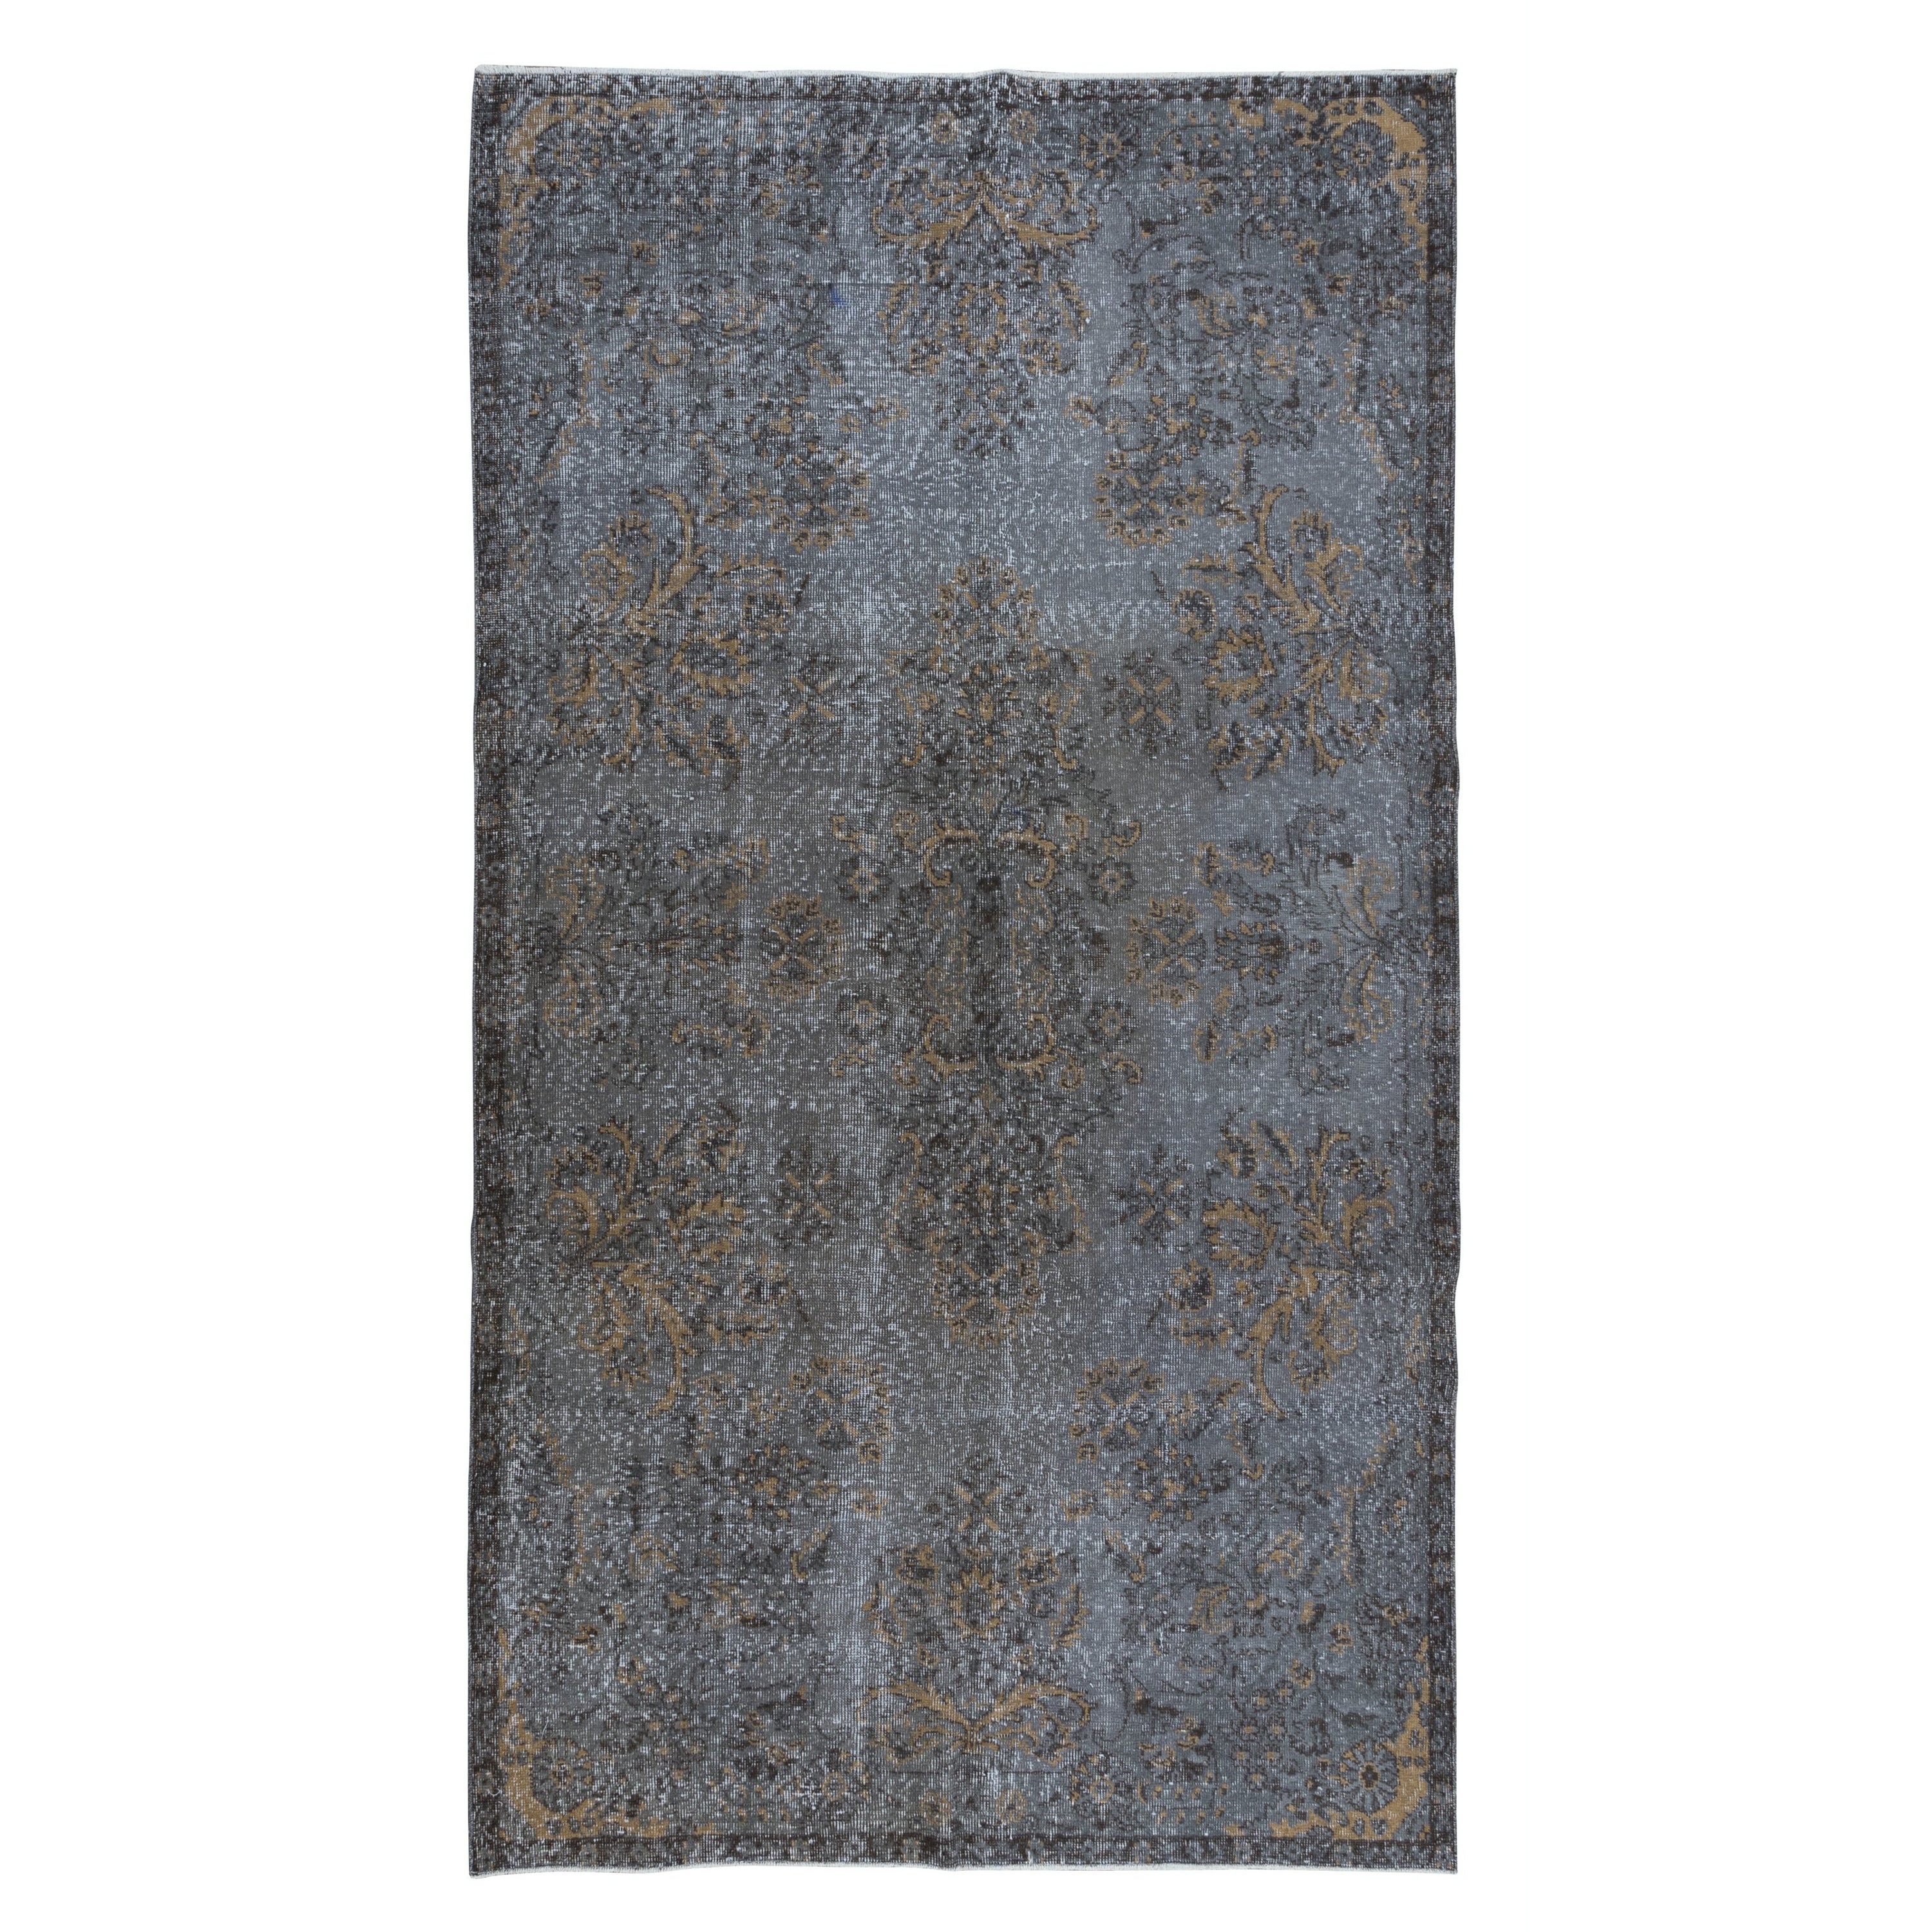 5.6x10 Ft Handgefertigter Teppich in Zimmergröße, recycelter türkischer Teppich in Grau & Beige in Grau